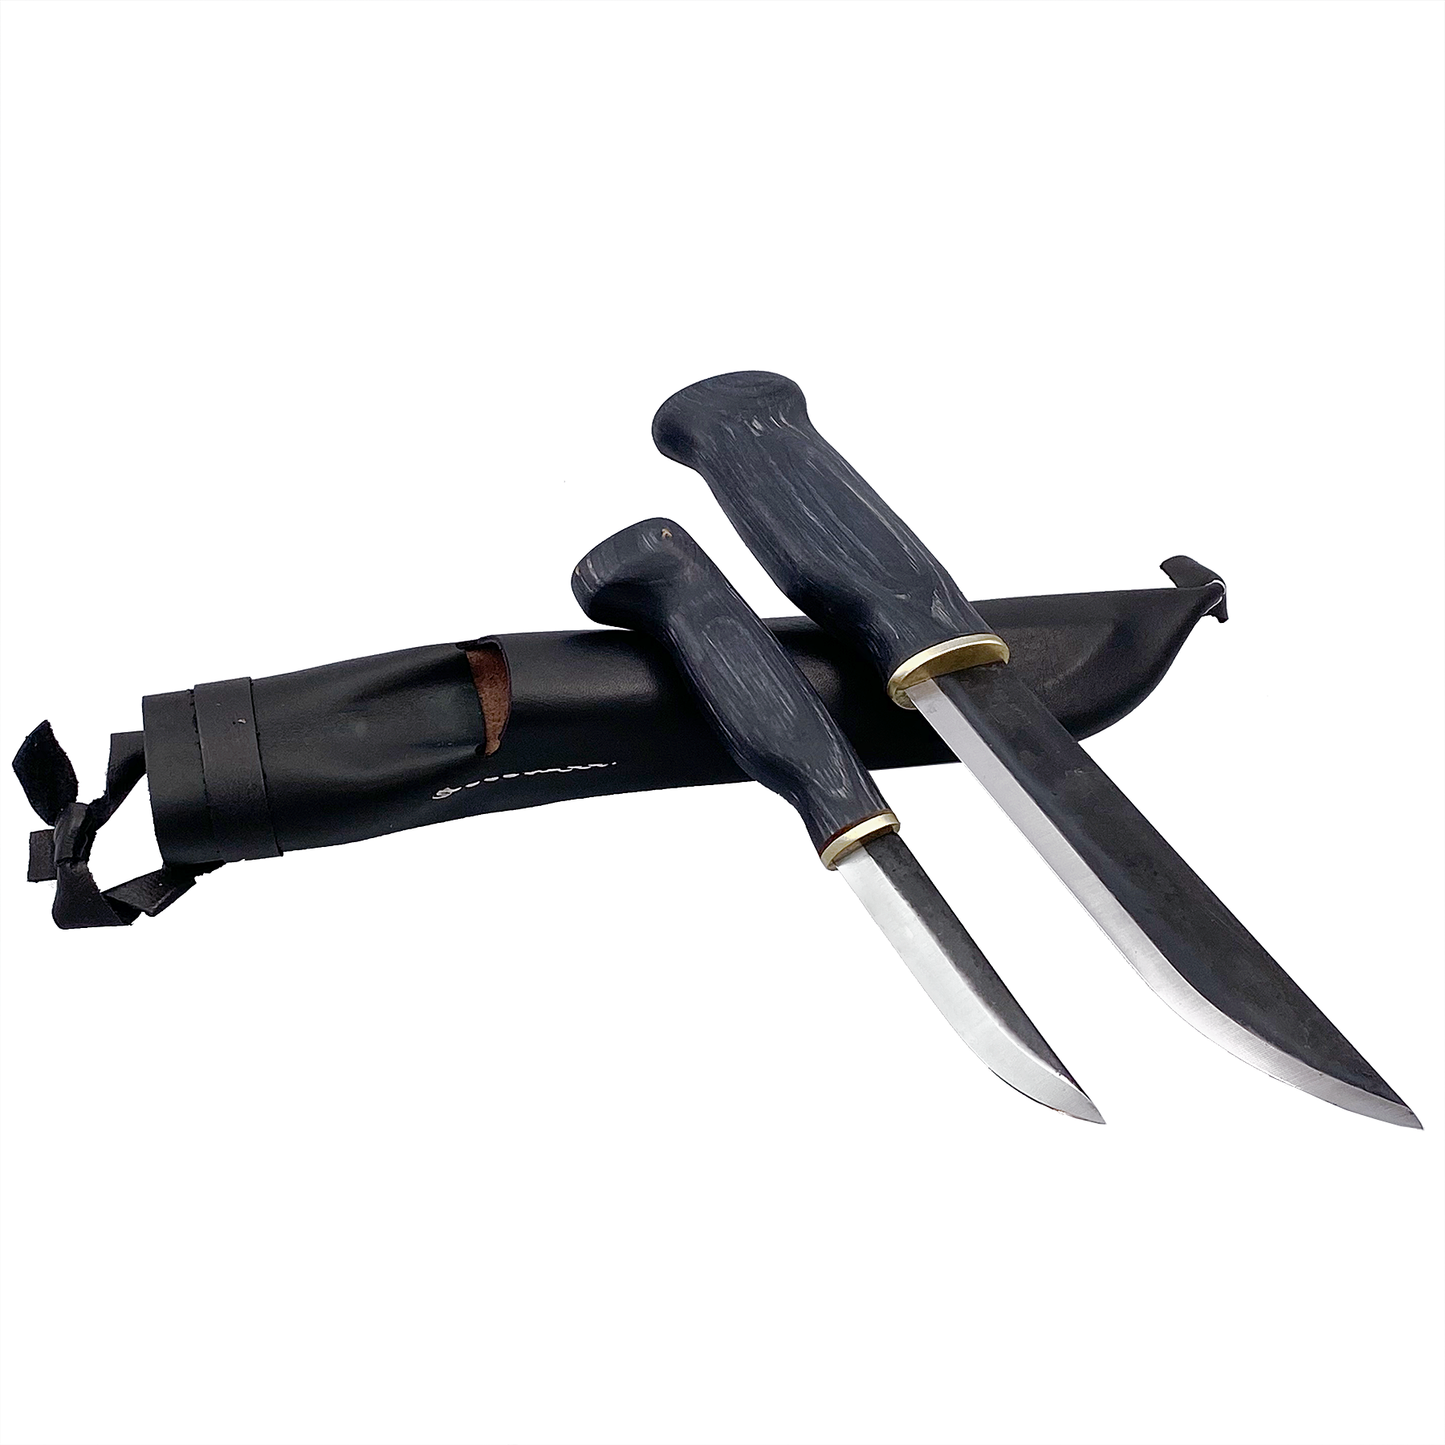 Dubbelkniv 17 cm huggare och 9,5 cm svart trä knivslida i svart läder